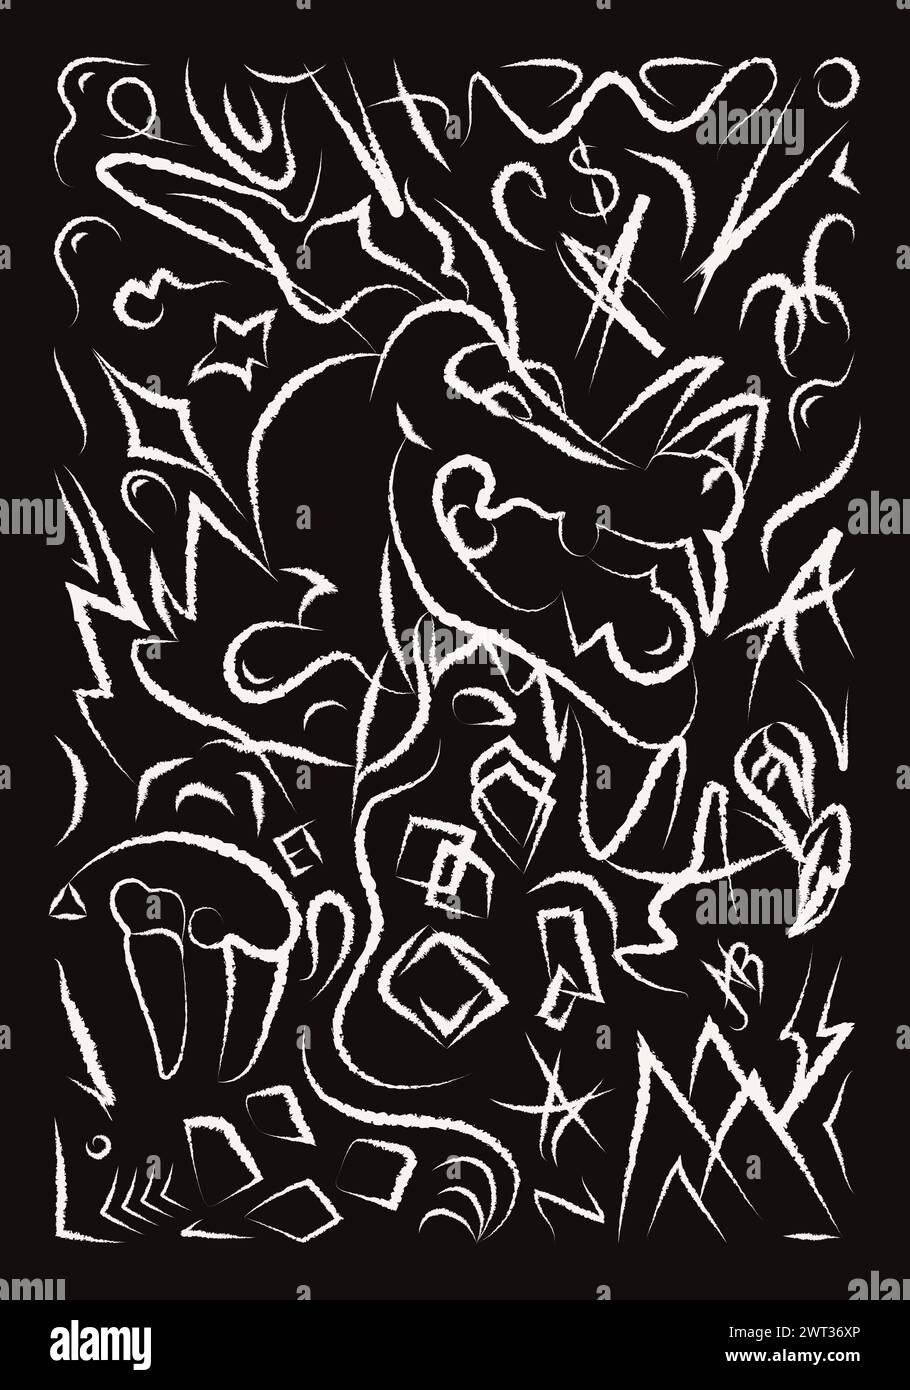 Illustrazione a doodle astratta di Dragon tratto di pennello Street art biglietto di auguri immagine disegnata a mano in gesso bianco isolata su sfondo nero Illustrazione Vettoriale